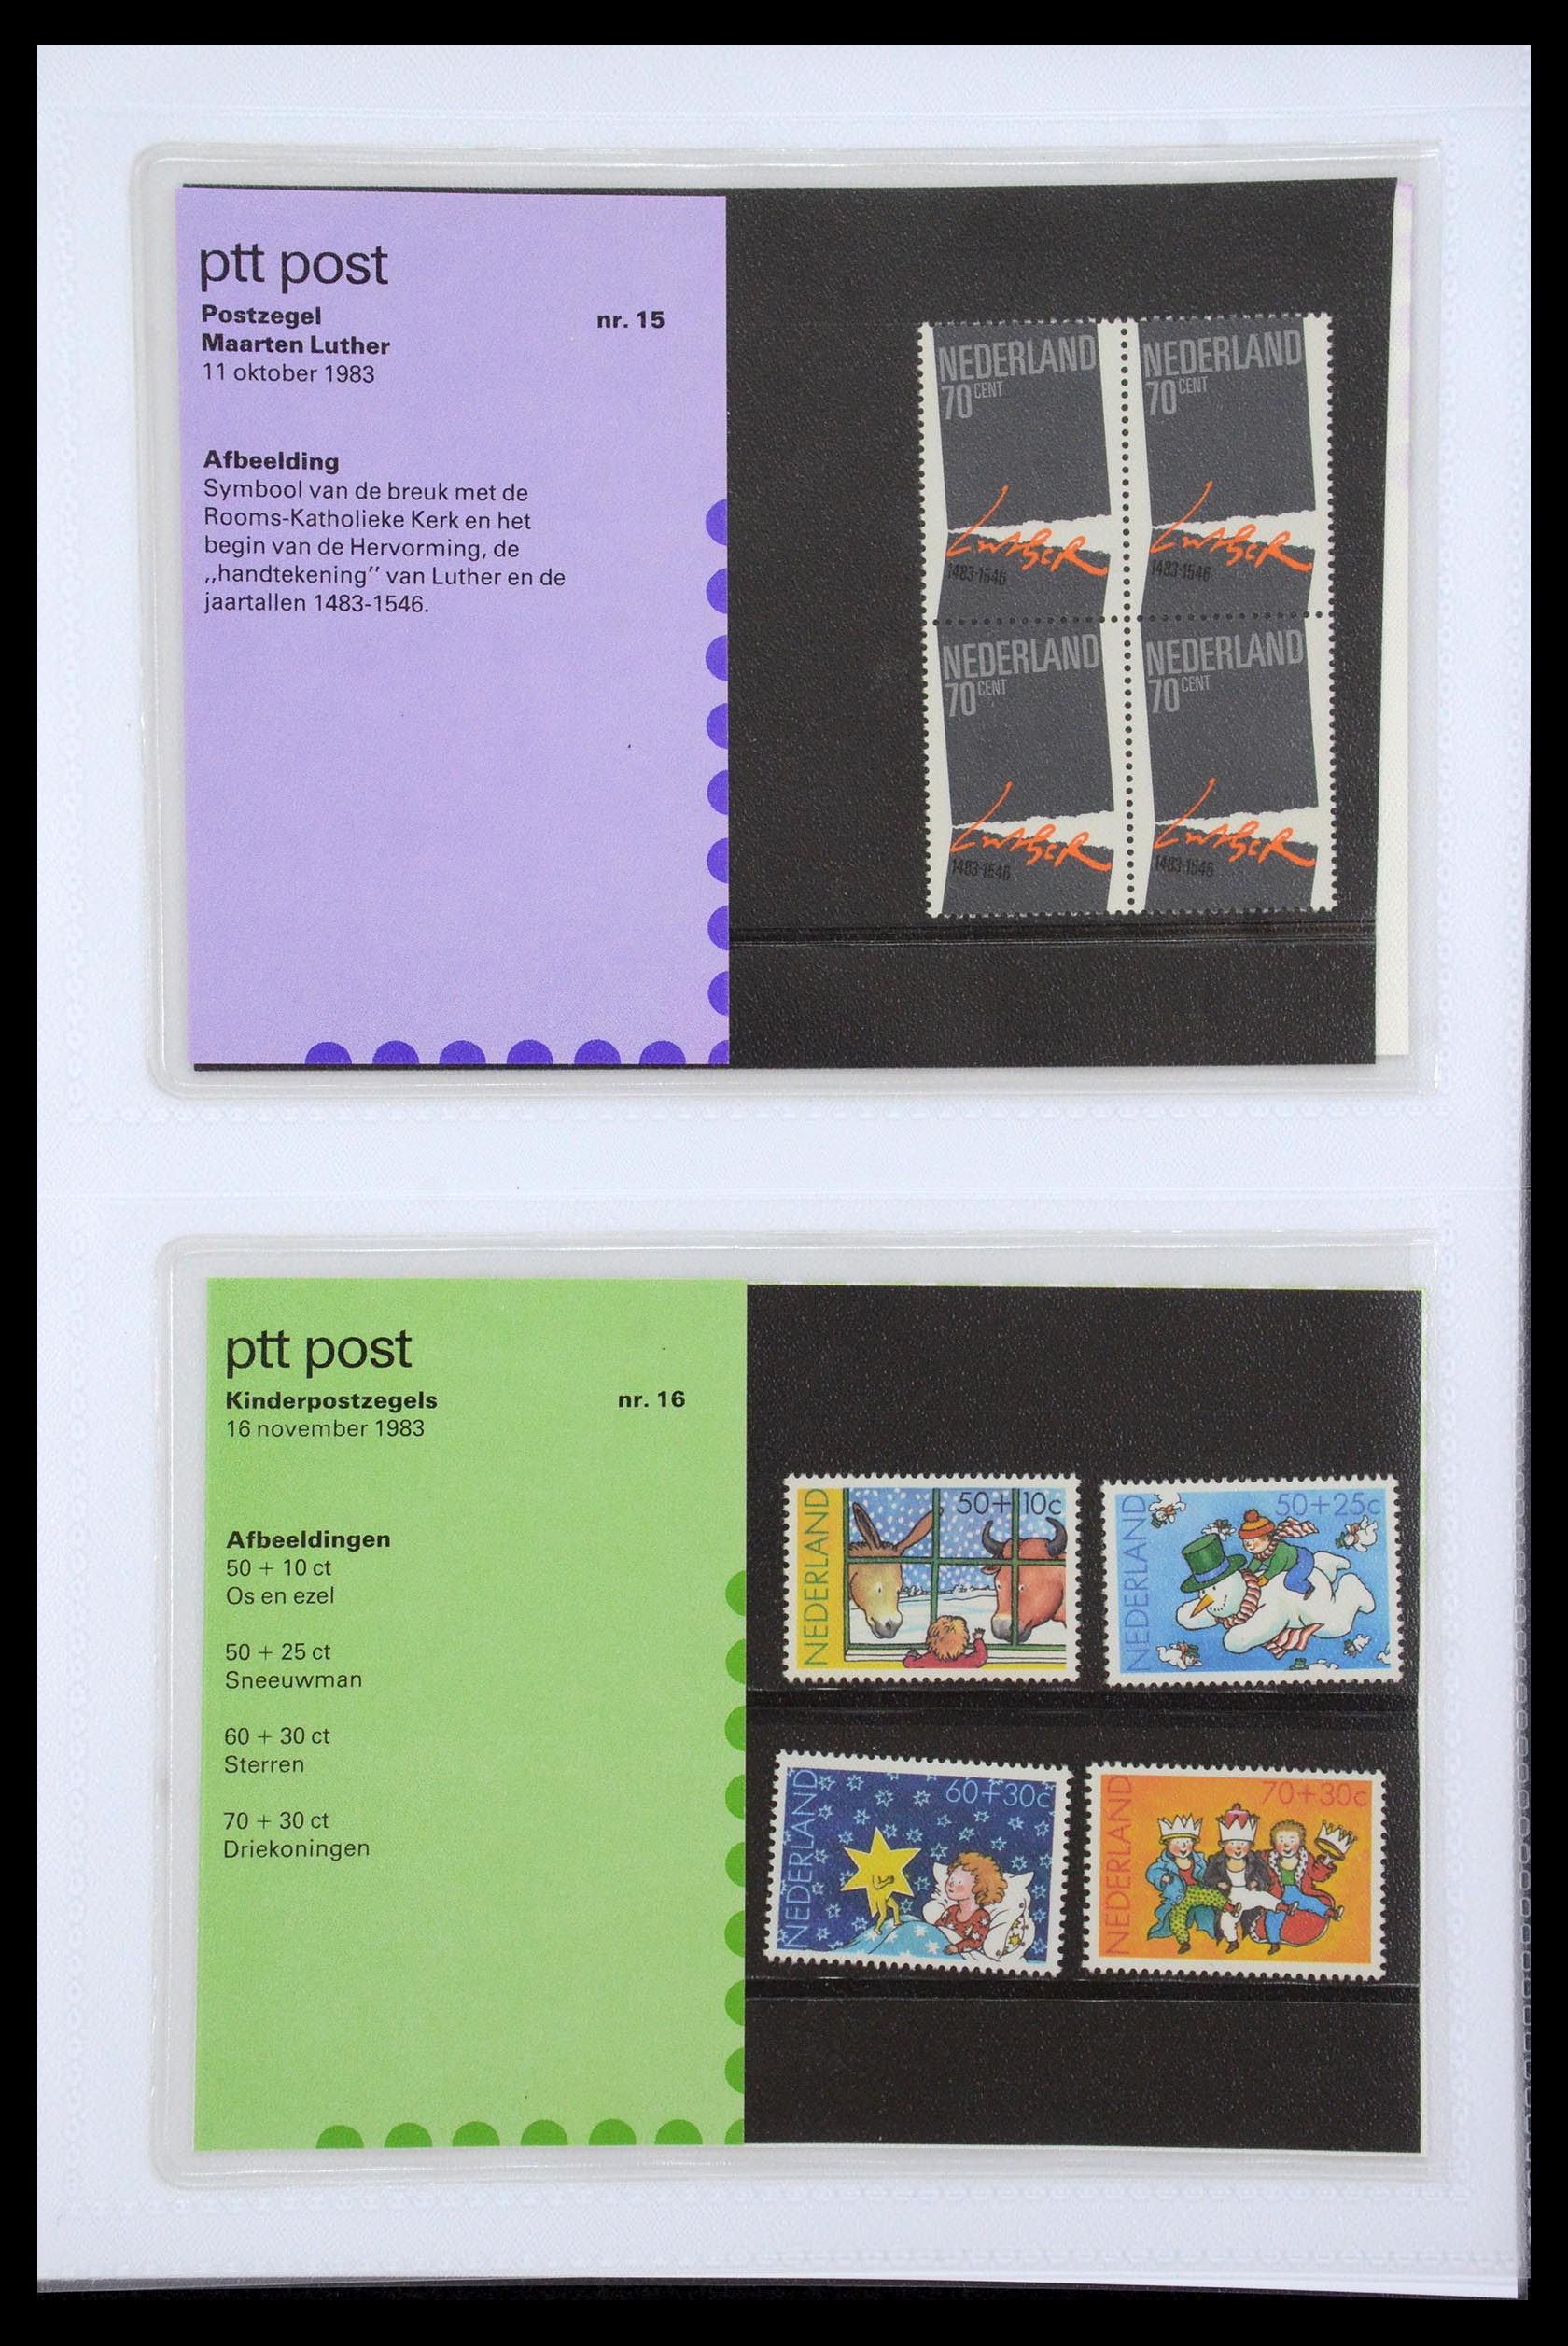 35947 008 - Stamp Collection 35947 Netherlands PTT presentation packs 1982-2019!